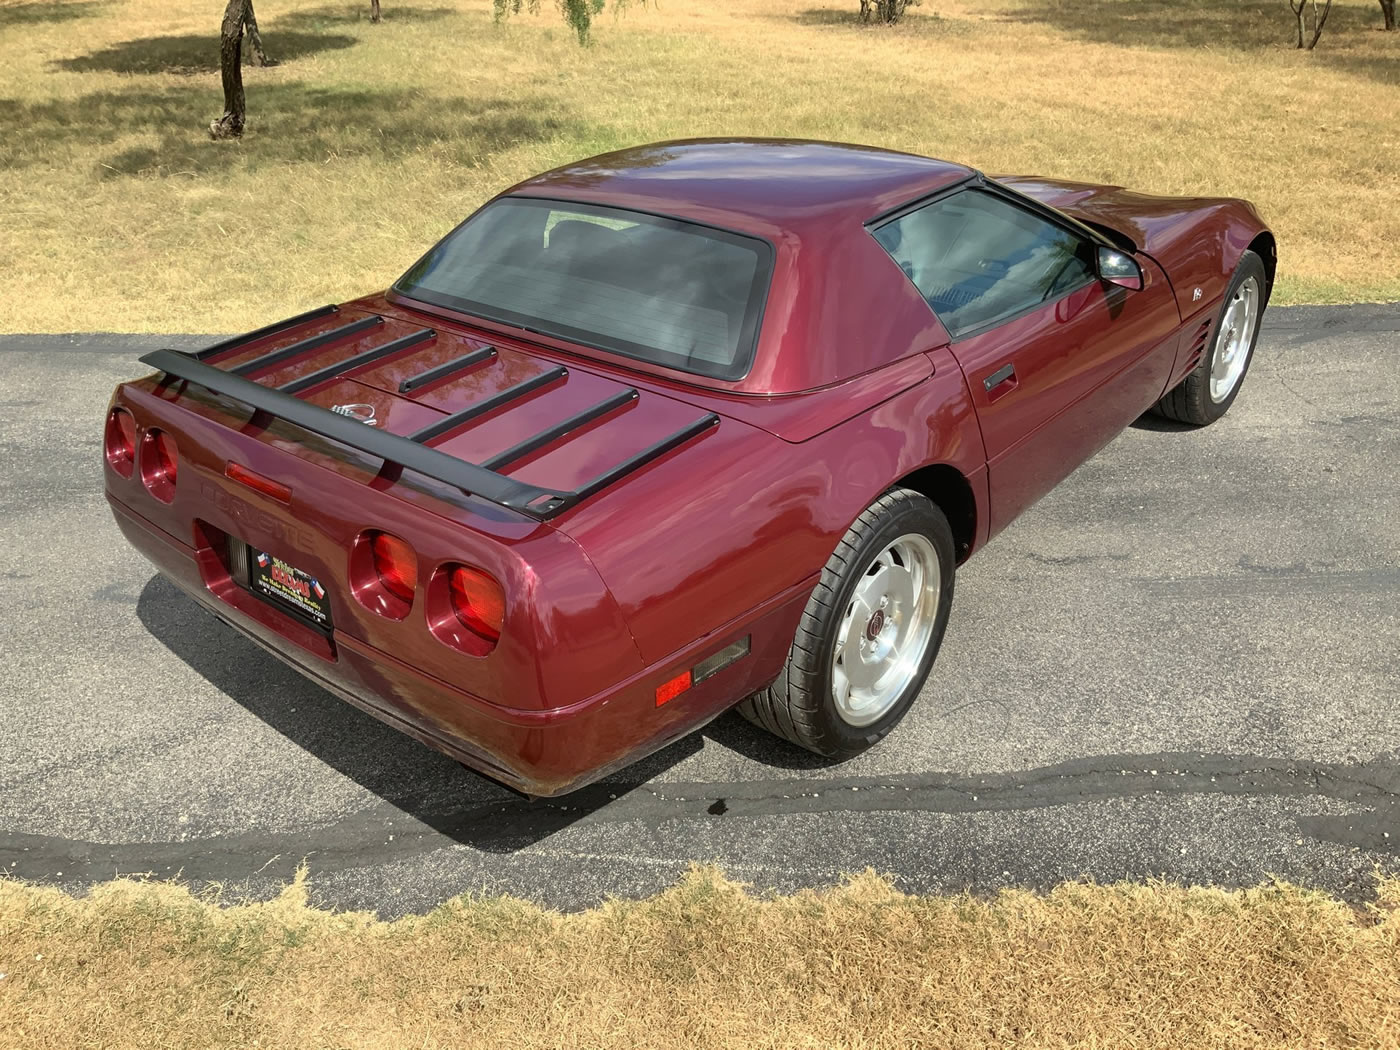 1993 Corvette 40th Anniversary Convertible